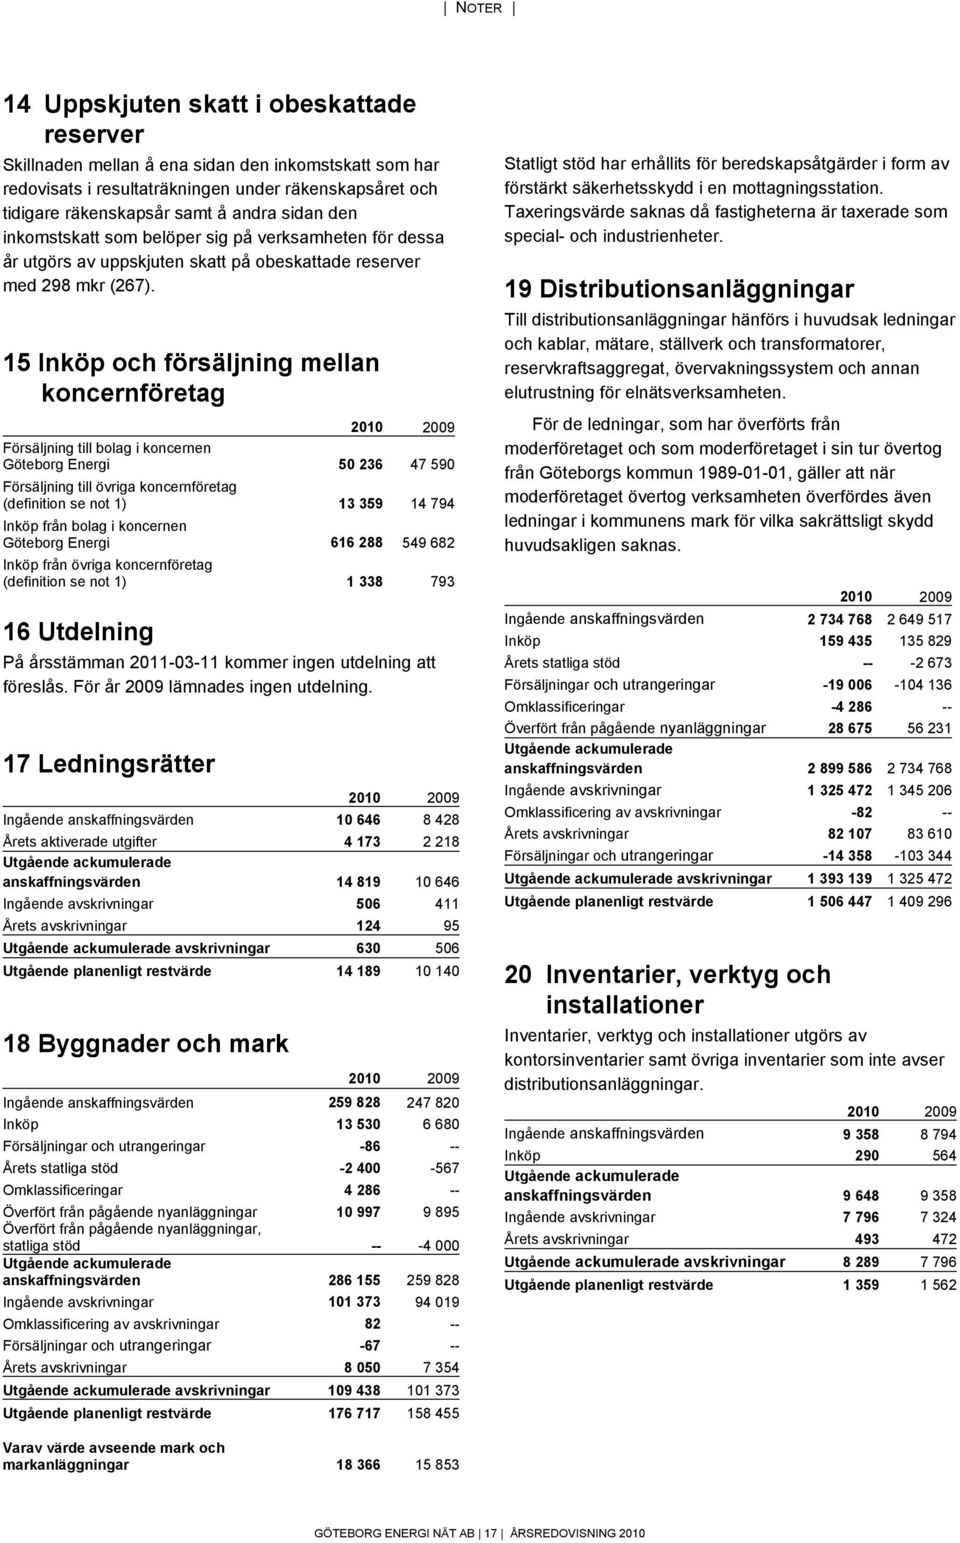 15 Inköp och försäljning mellan koncernföretag Försäljning till bolag i koncernen Göteborg Energi 50 236 47 590 Försäljning till övriga koncernföretag (definition se not 1) 13 359 14 794 Inköp från